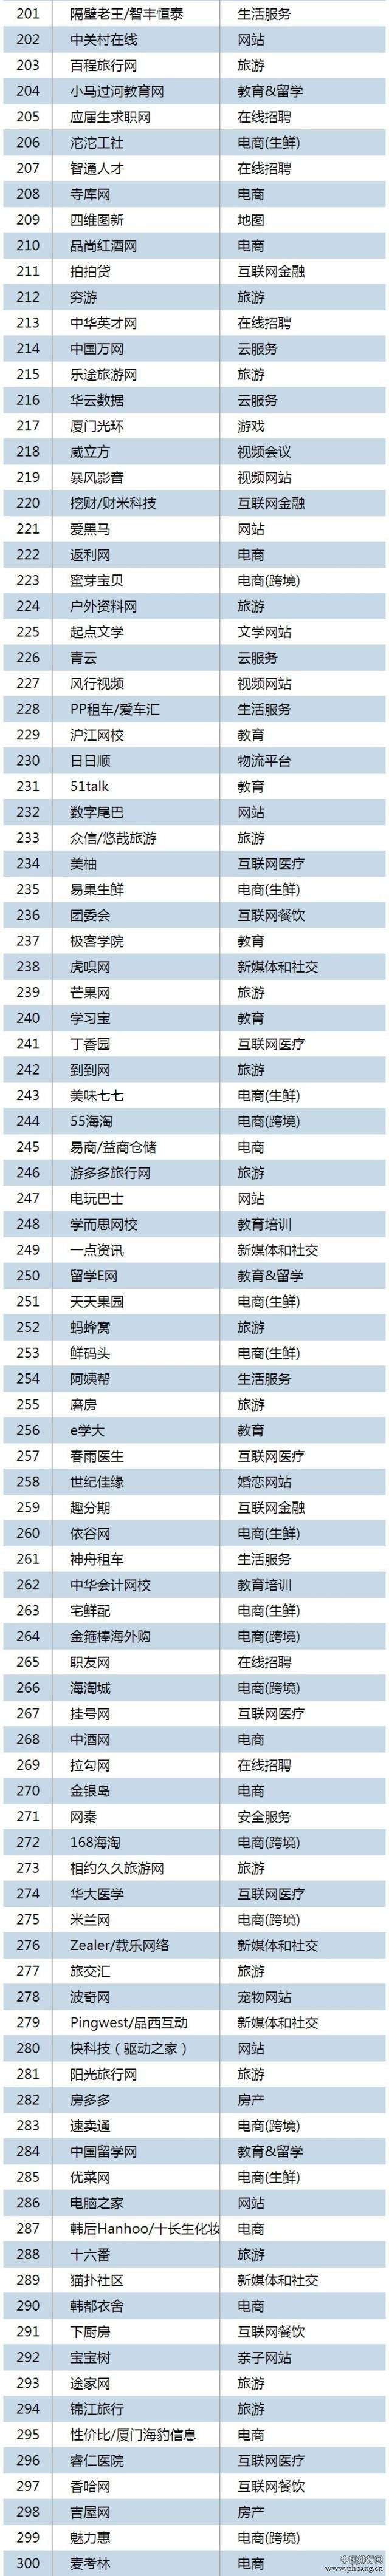 2015年一季度中国互联网Top500排行榜